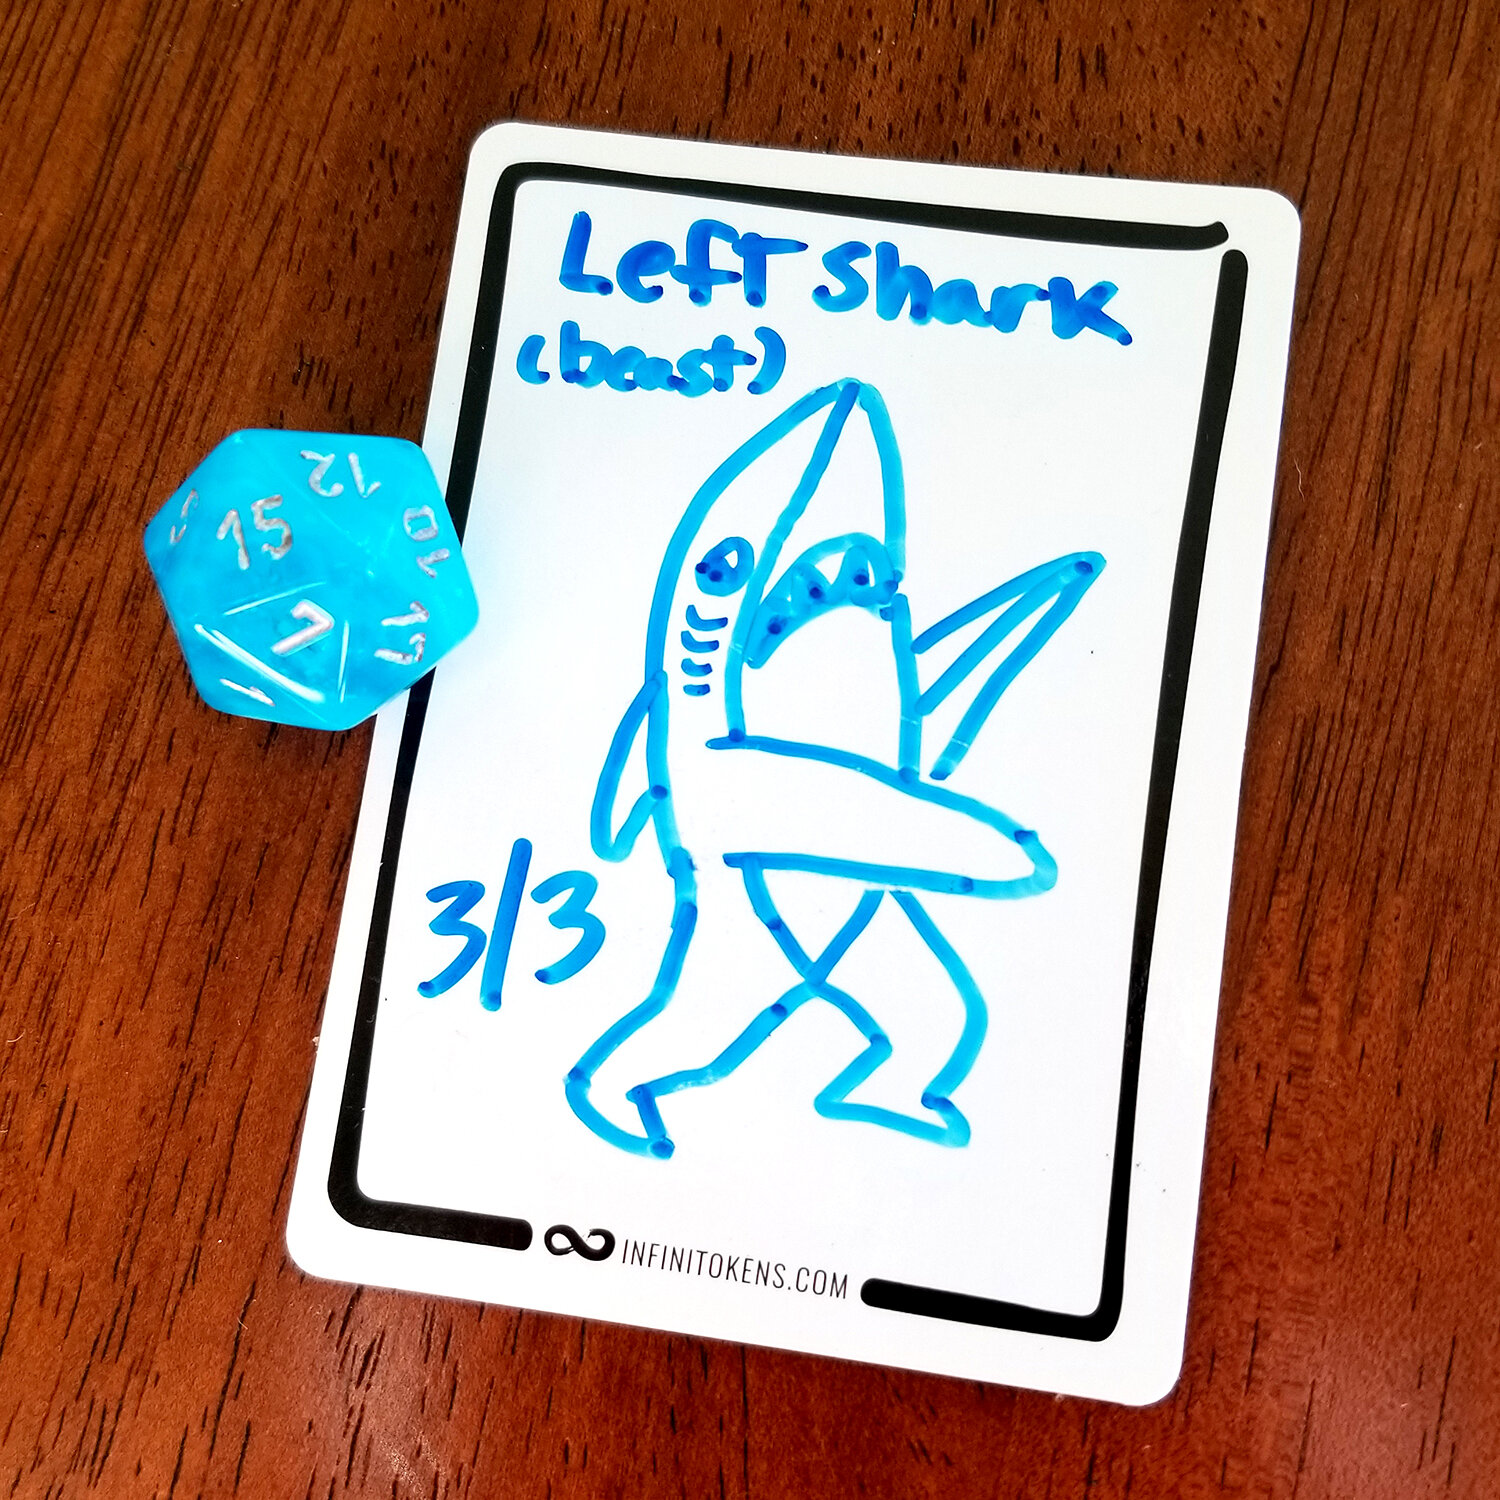 Sharkweek2019_LeftShark.jpg